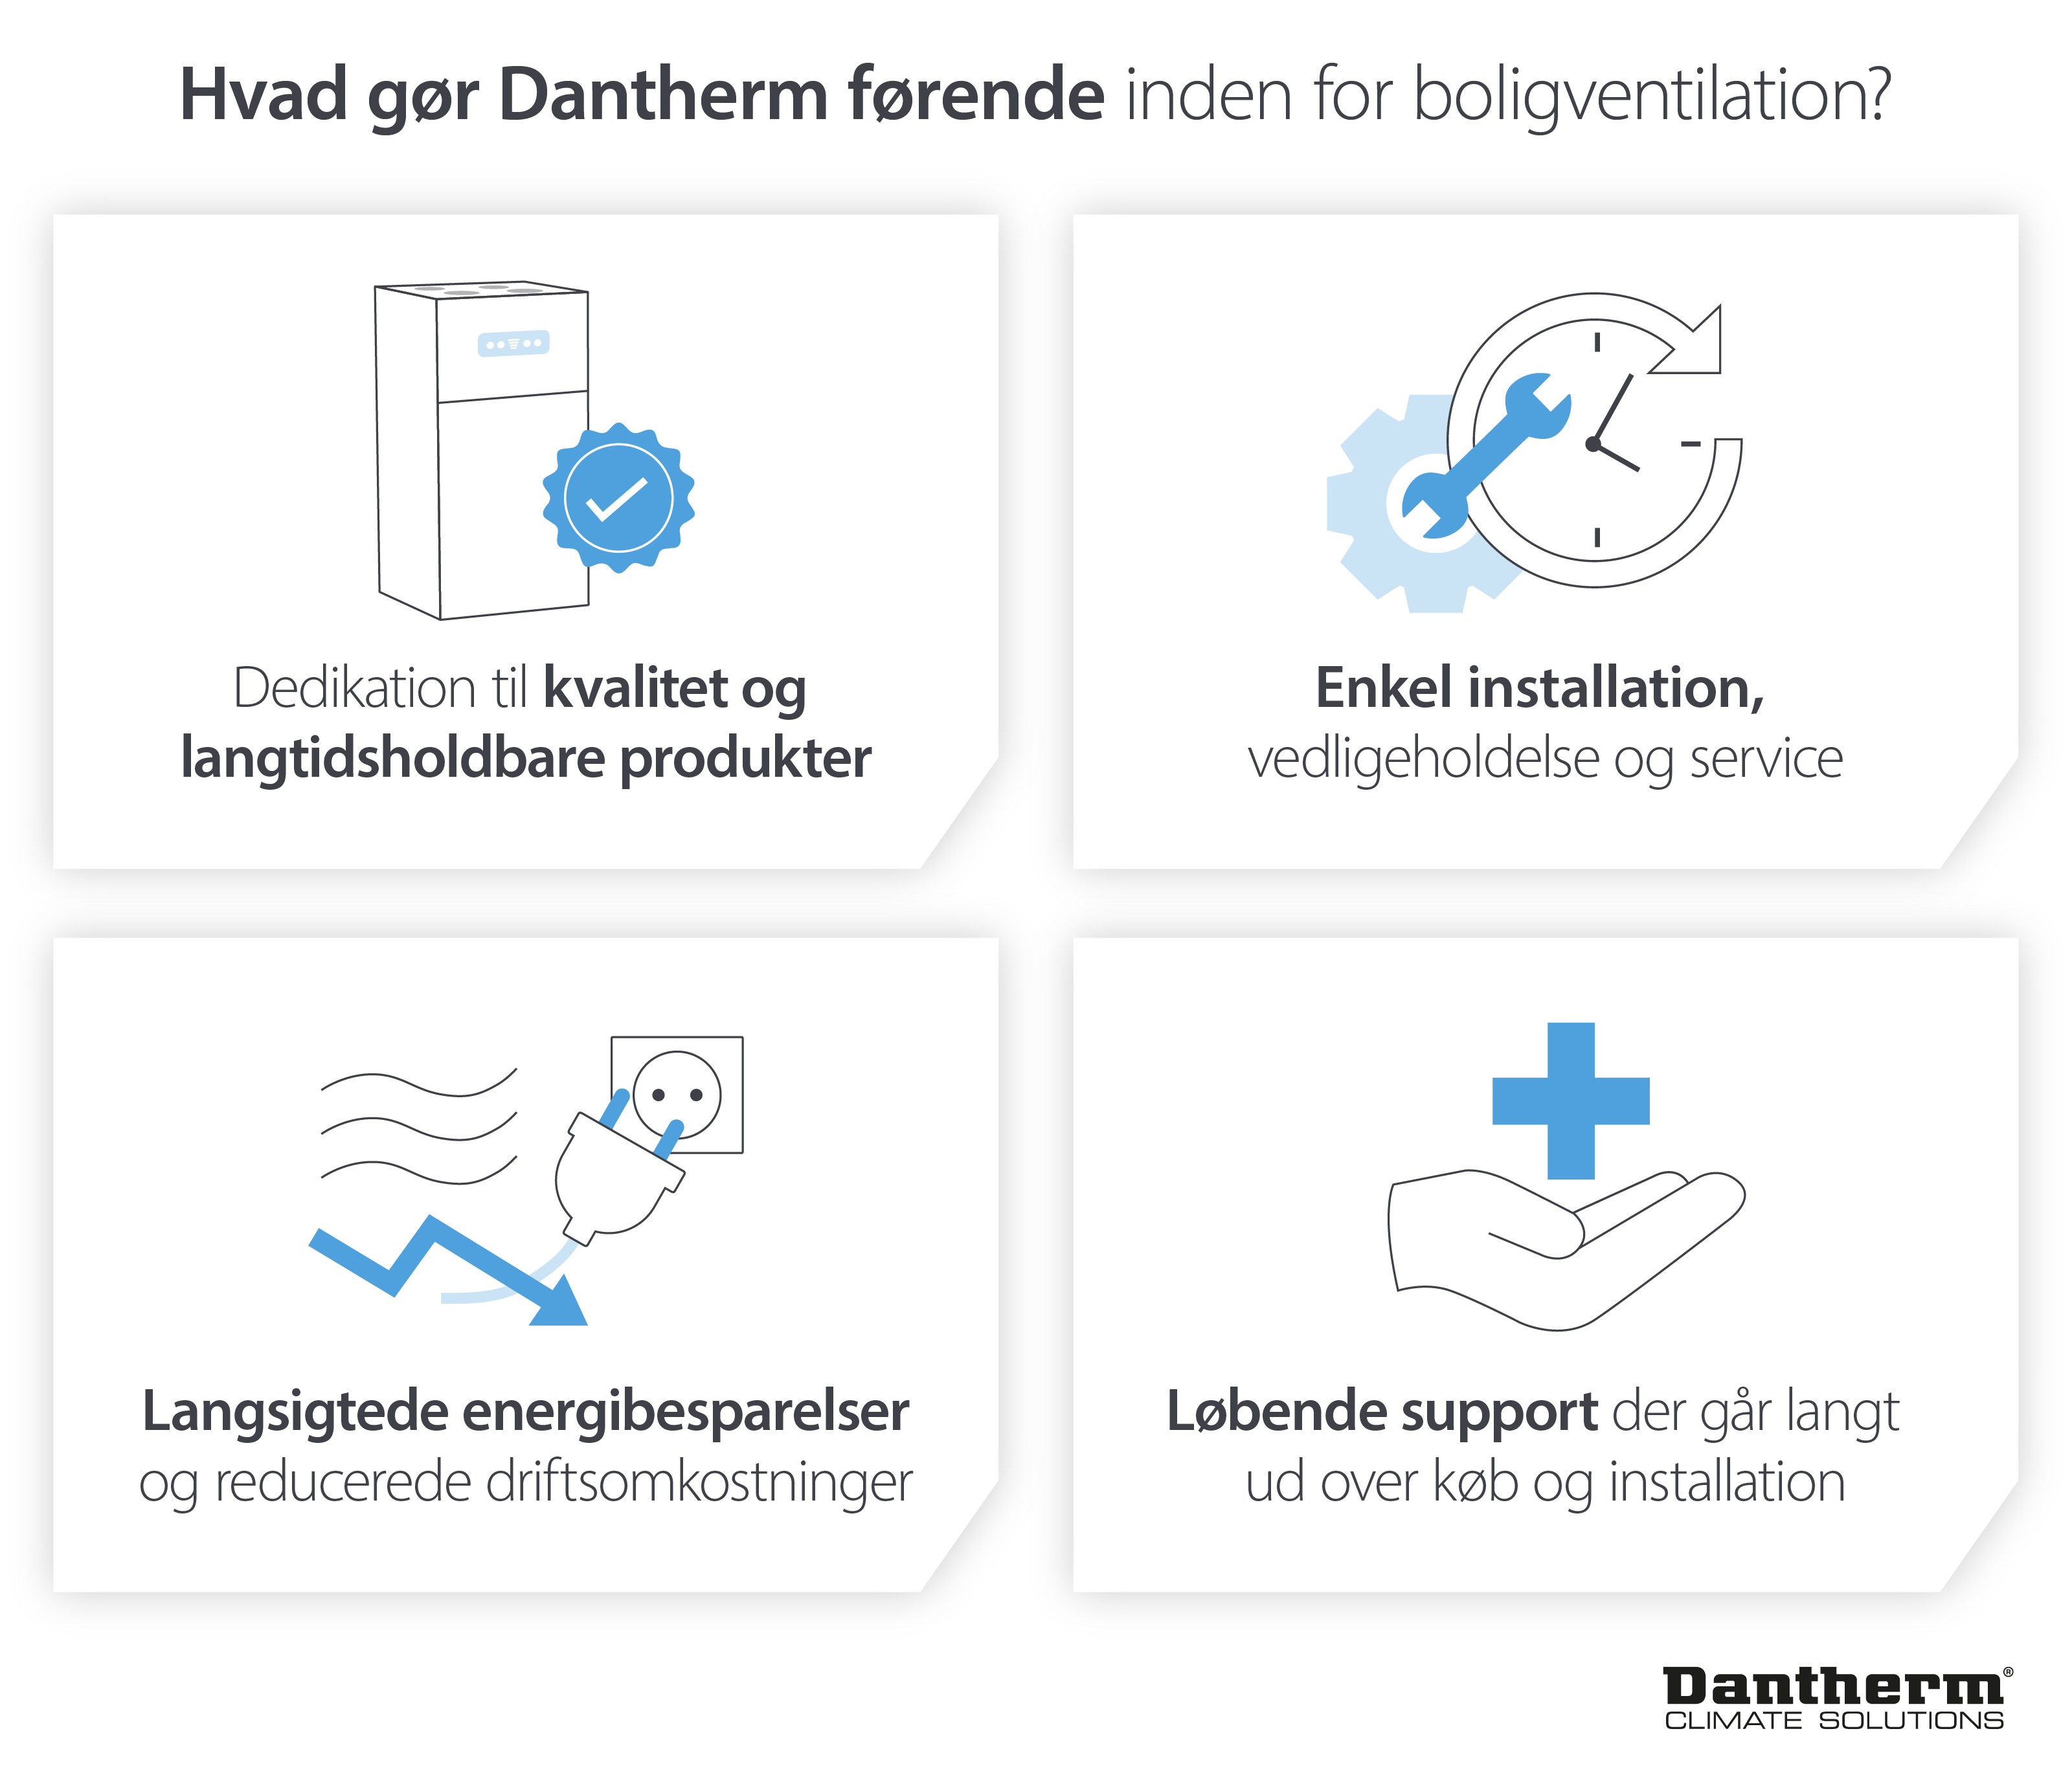 Hvad gør Dantherm til markedsledere inden for boligventilation gennem bæredygtige produkter og support af høj kvalitet - Infografisk billede